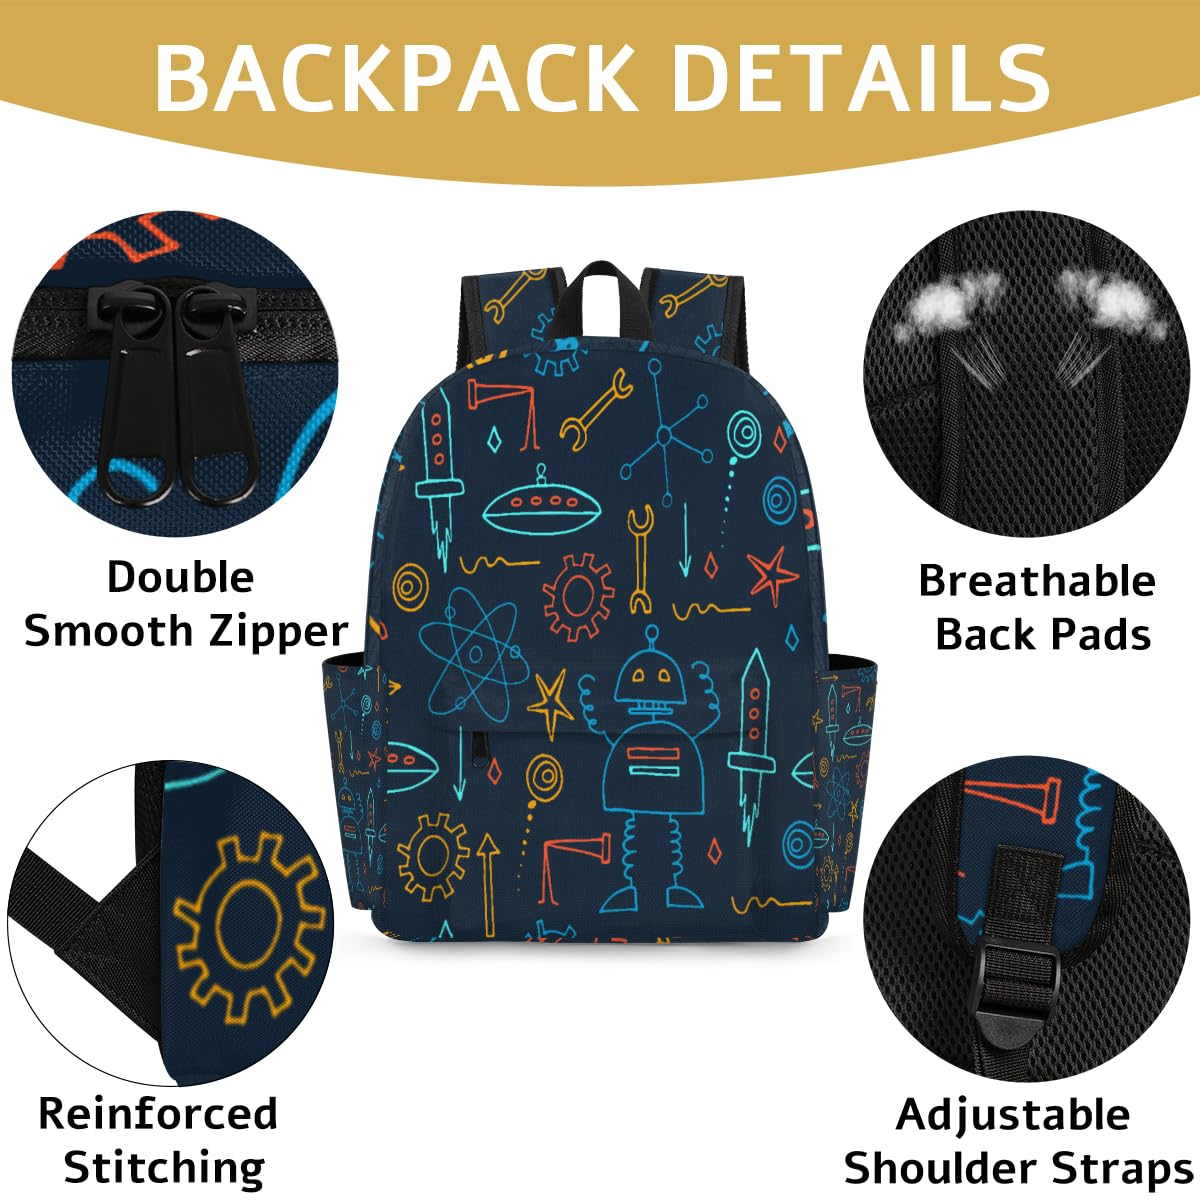 Toddler Backpack for Boys Girls, Kids Backpacks for Preschool, Kindergarten, Elementary School with Padded Back, Sturdy School Bags Children Bookbags Casual Travel Back Pack (Robot)